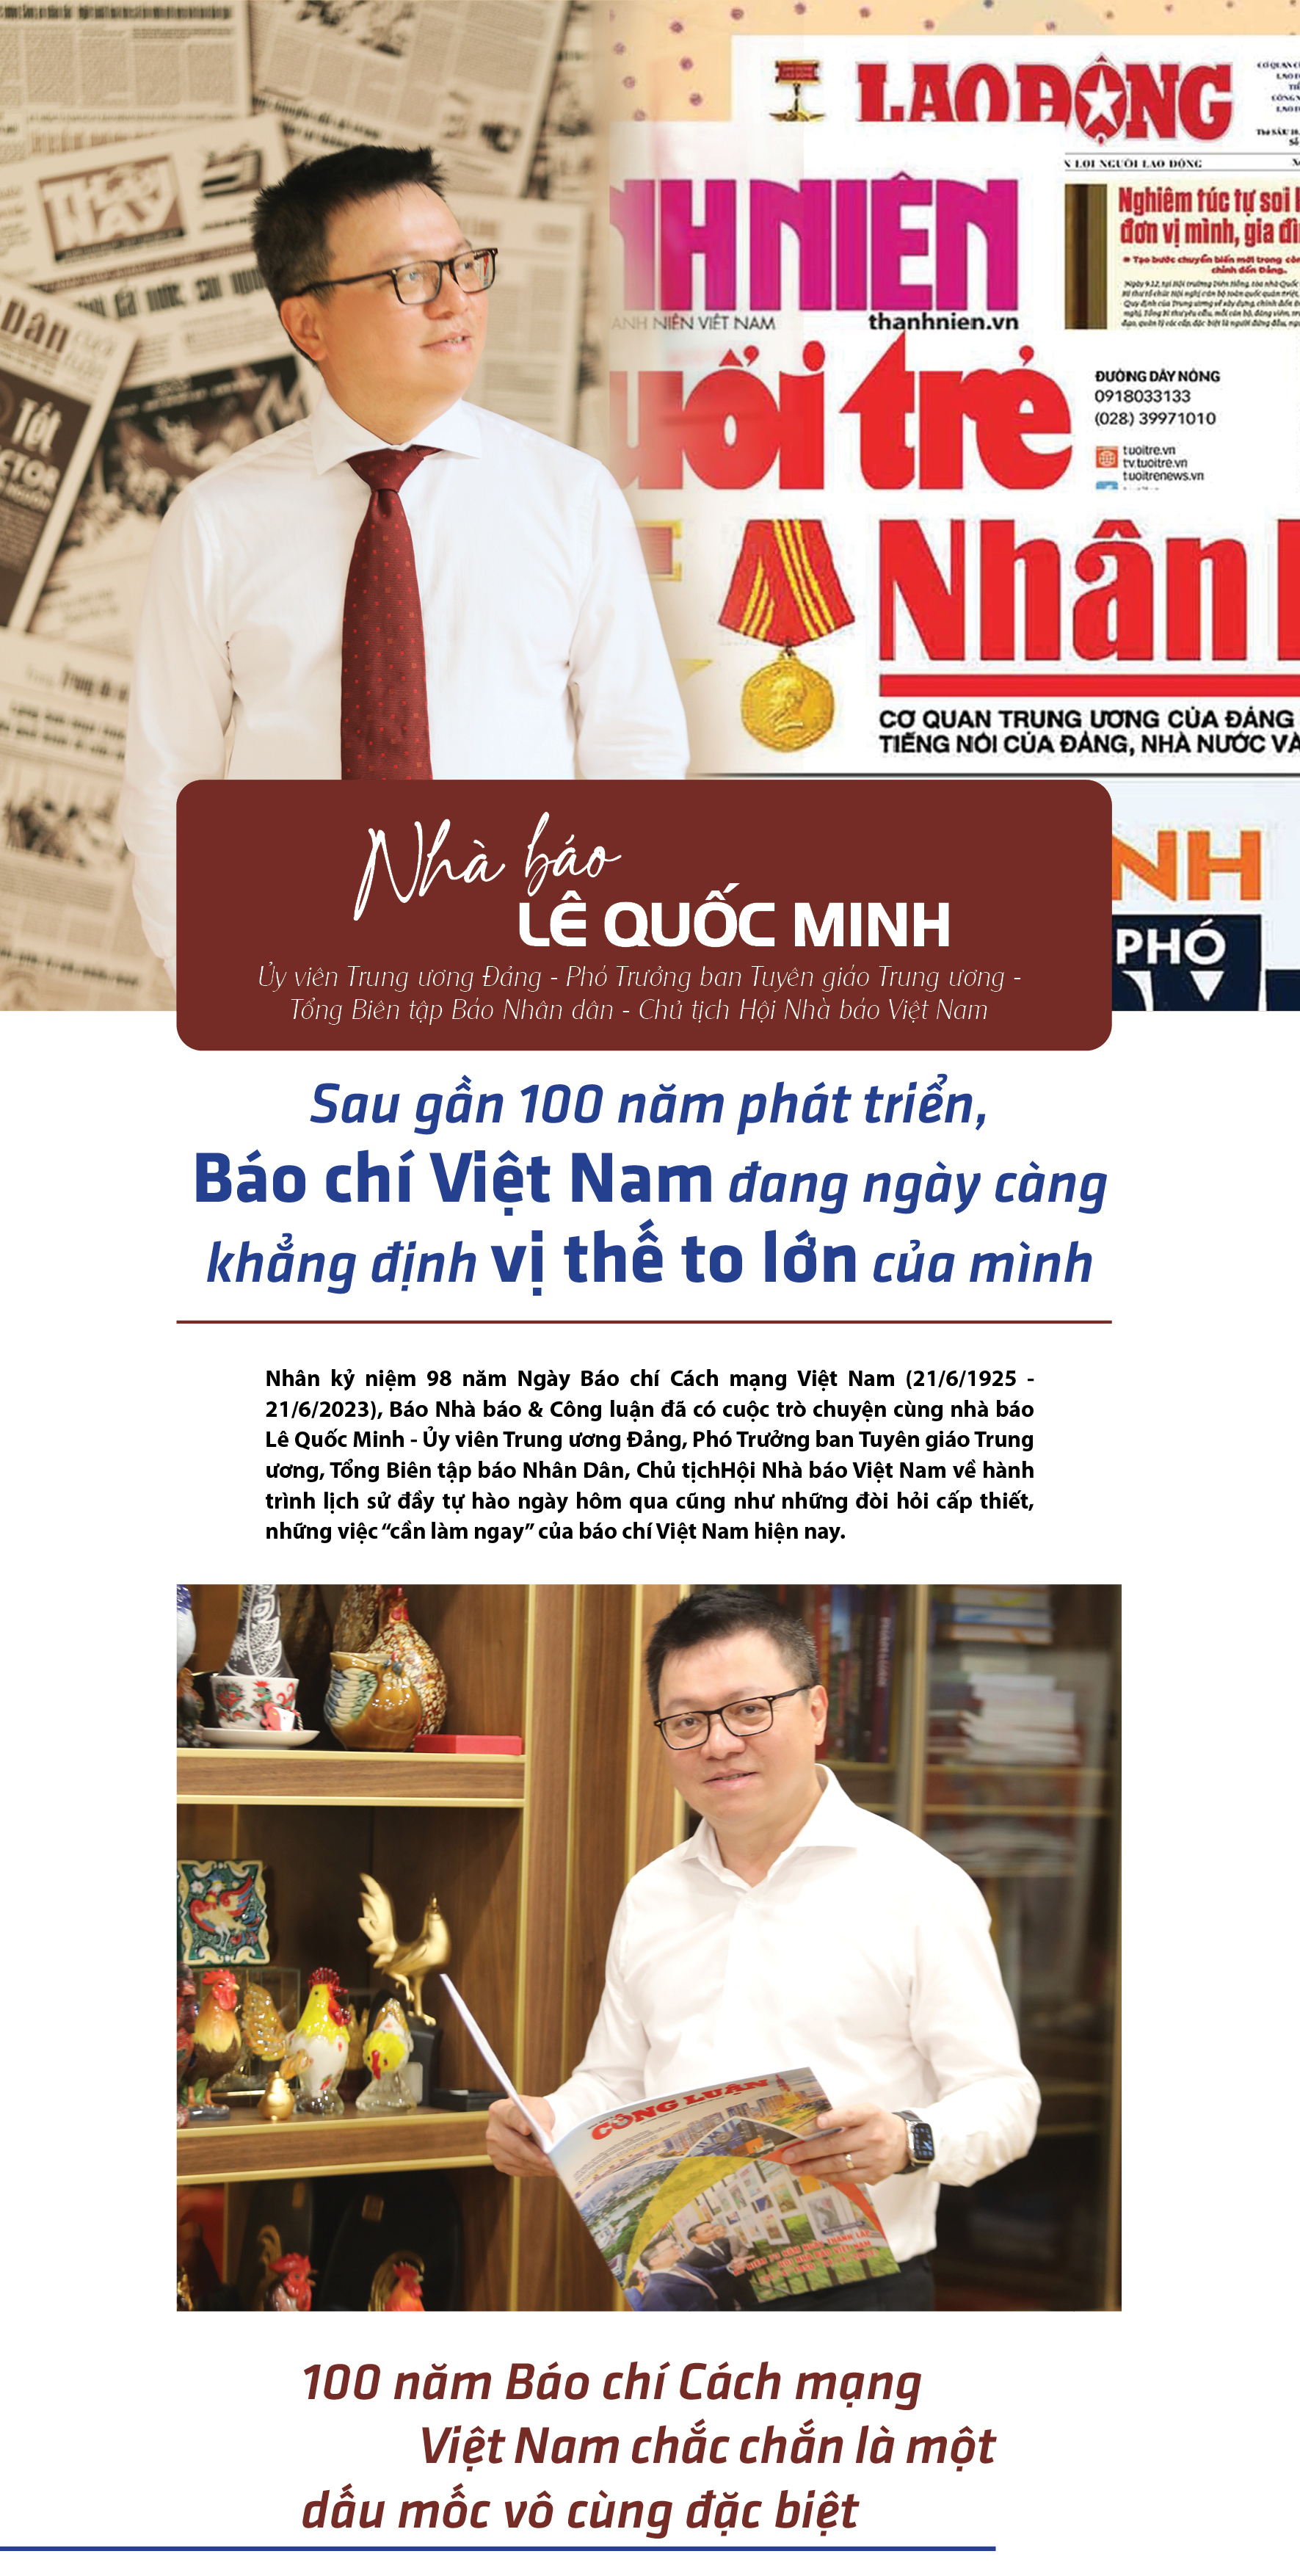 Sau gần 100 năm phát triển, Báo chí Việt Nam đang ngày càng khẳng định vị thế to lớn của mình